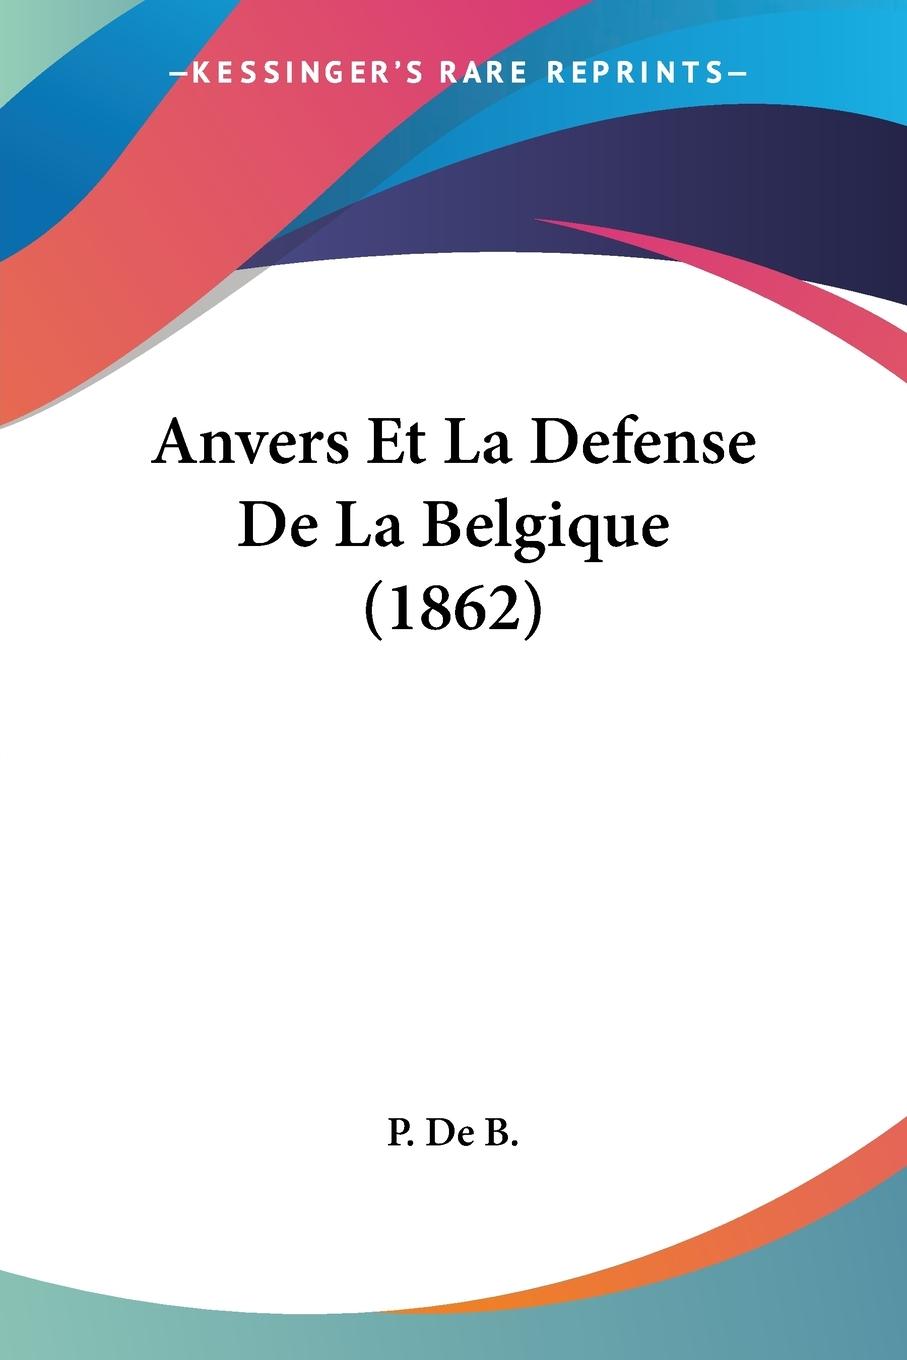 Anvers Et La Defense De La Belgique (1862) - P. De B.